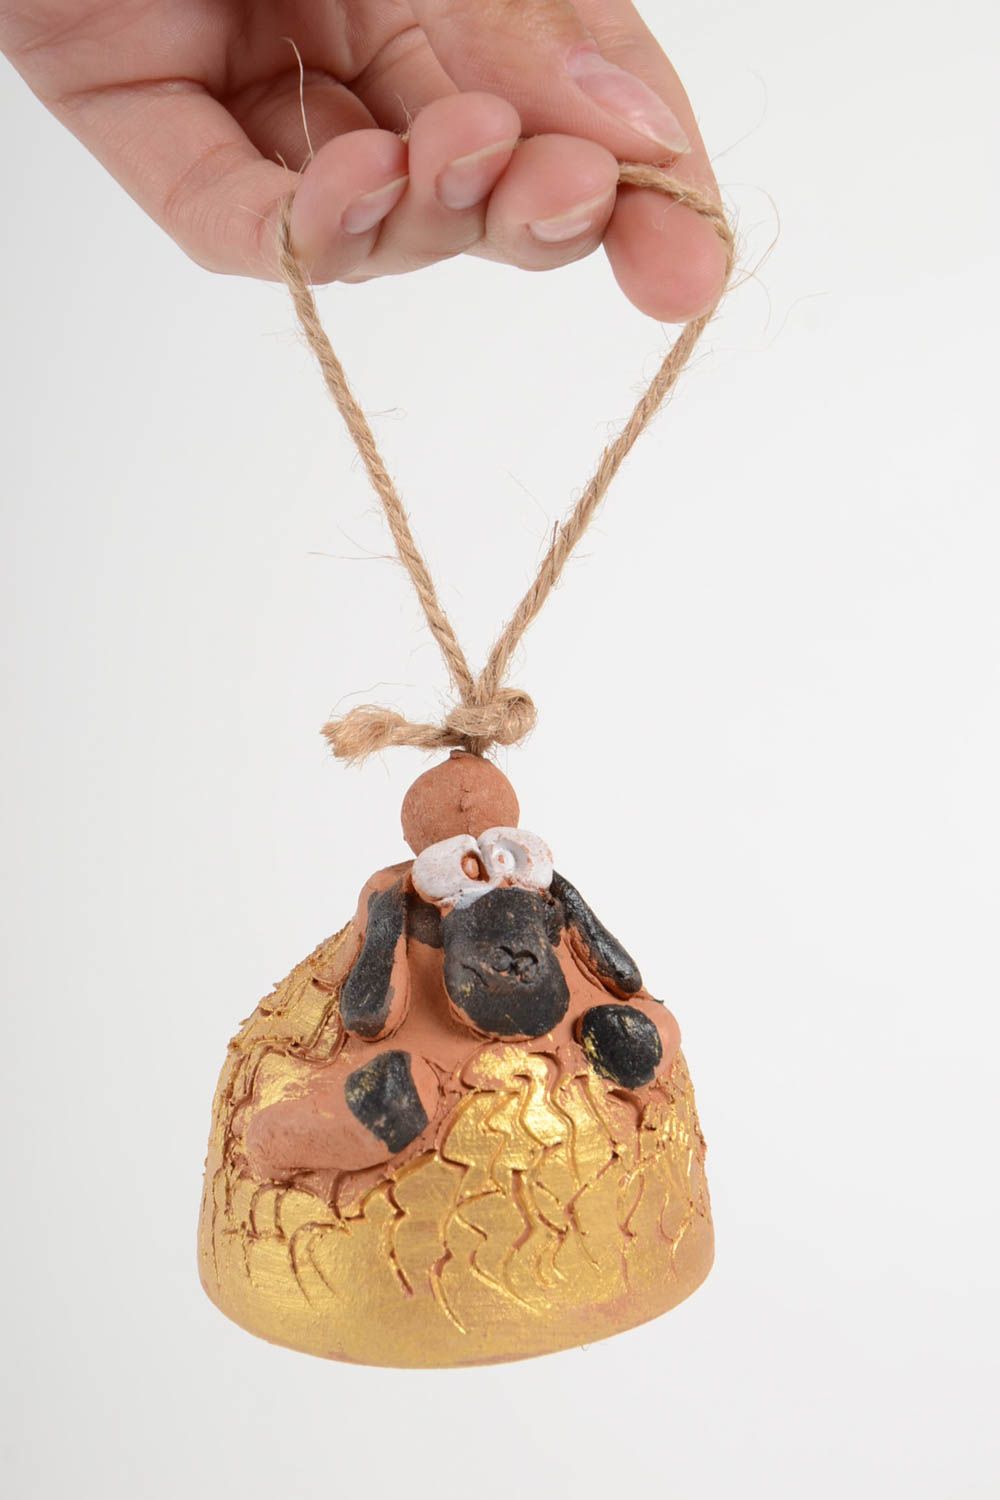 Глиняный колокольчик в виде барашка ручной работы расписанный красками фото 2